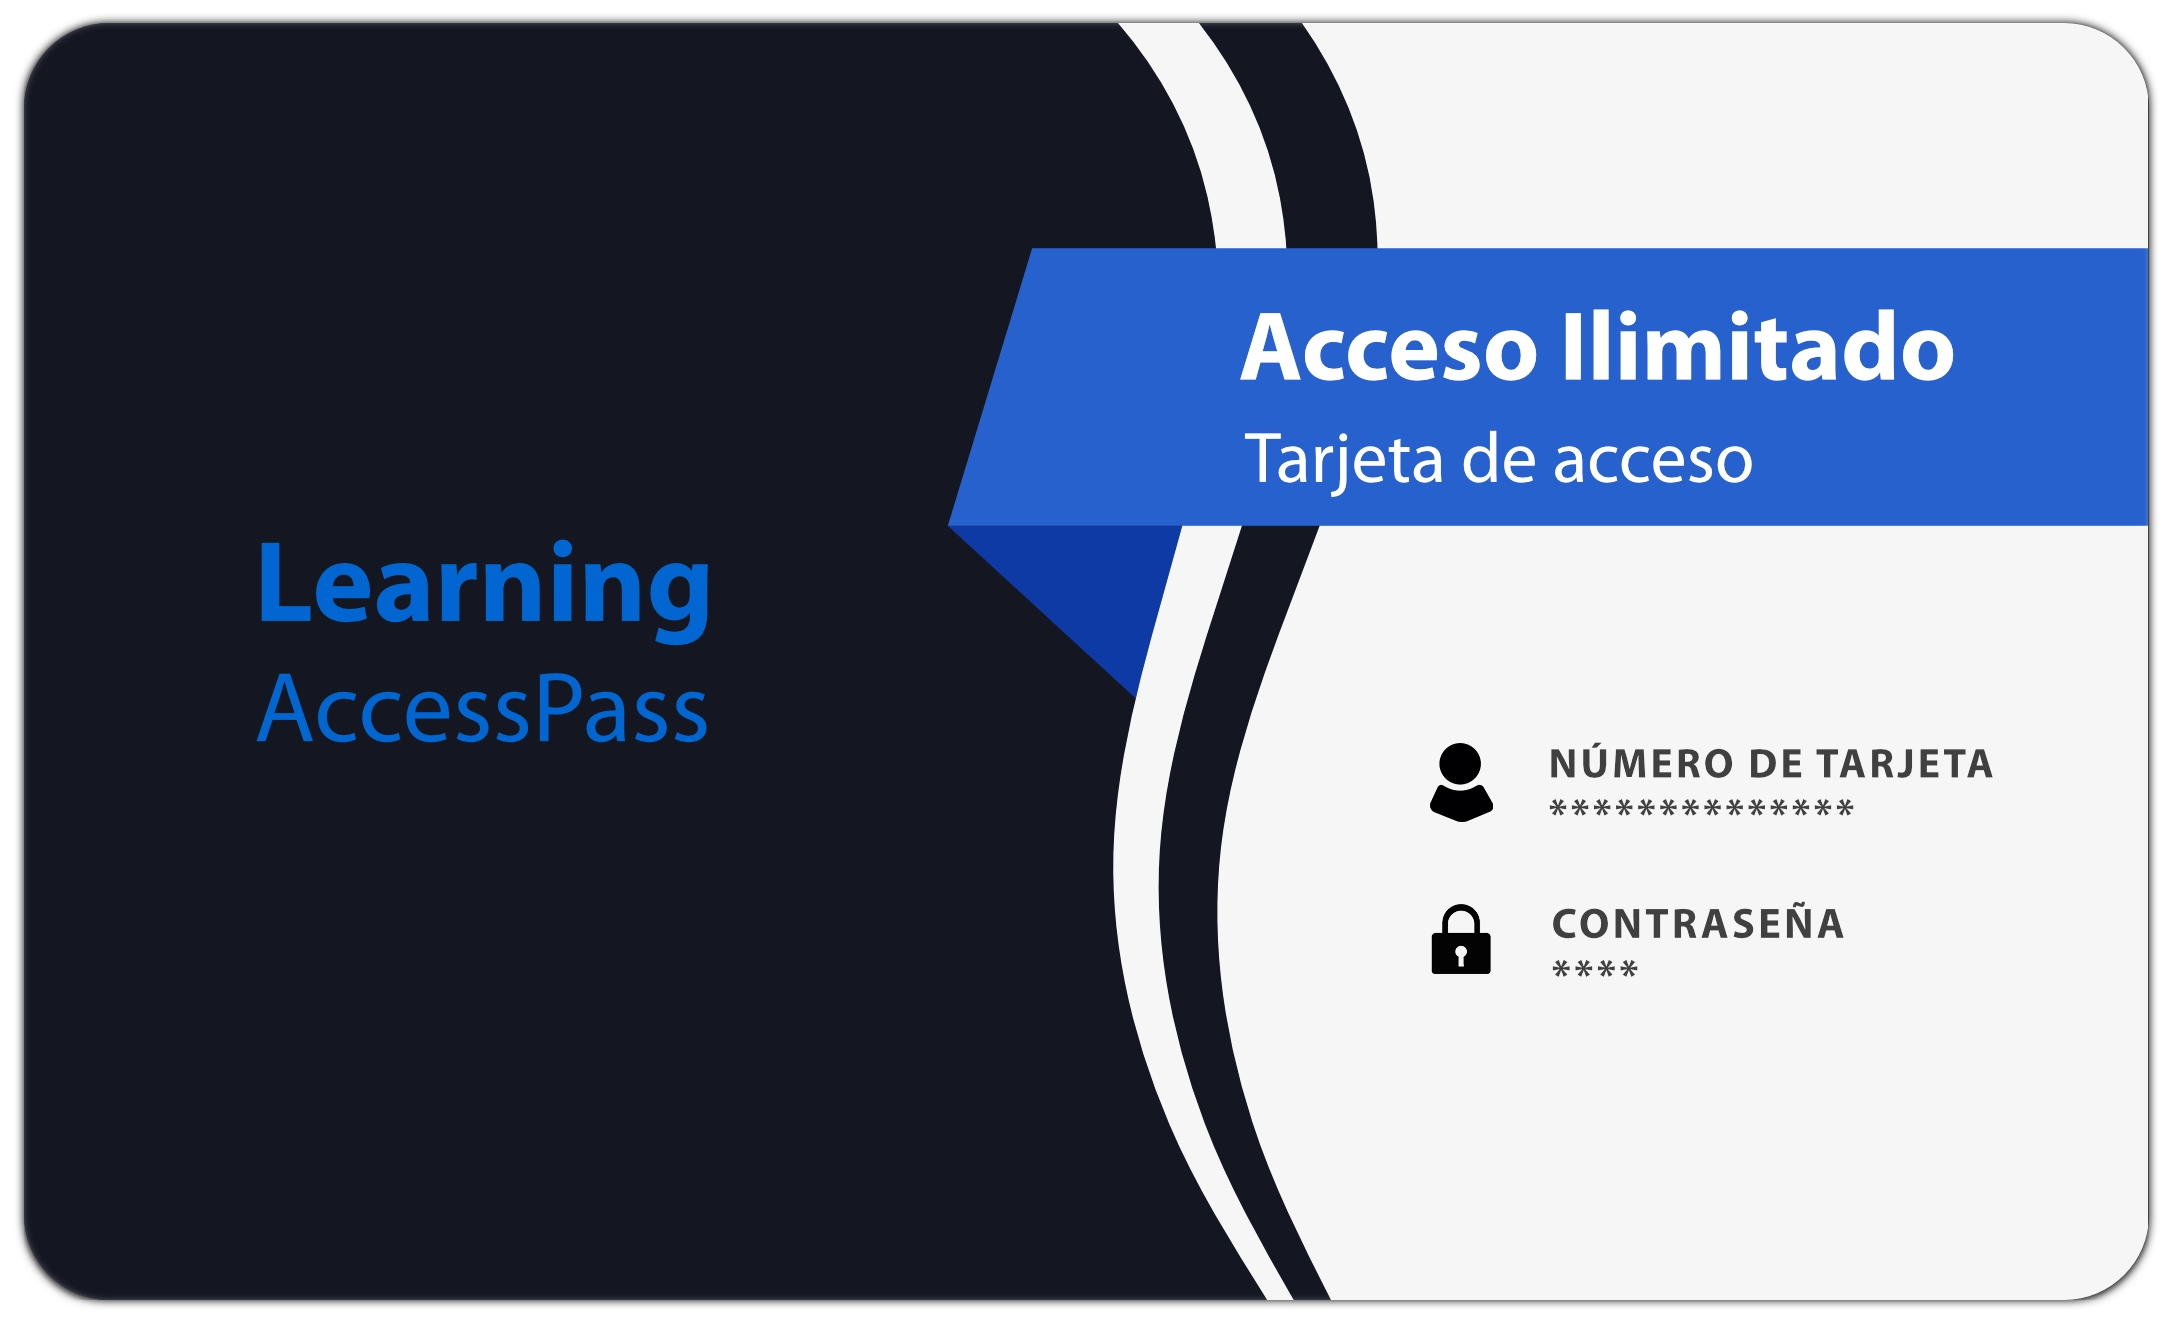 Tarjeta de acceso linkedin learning